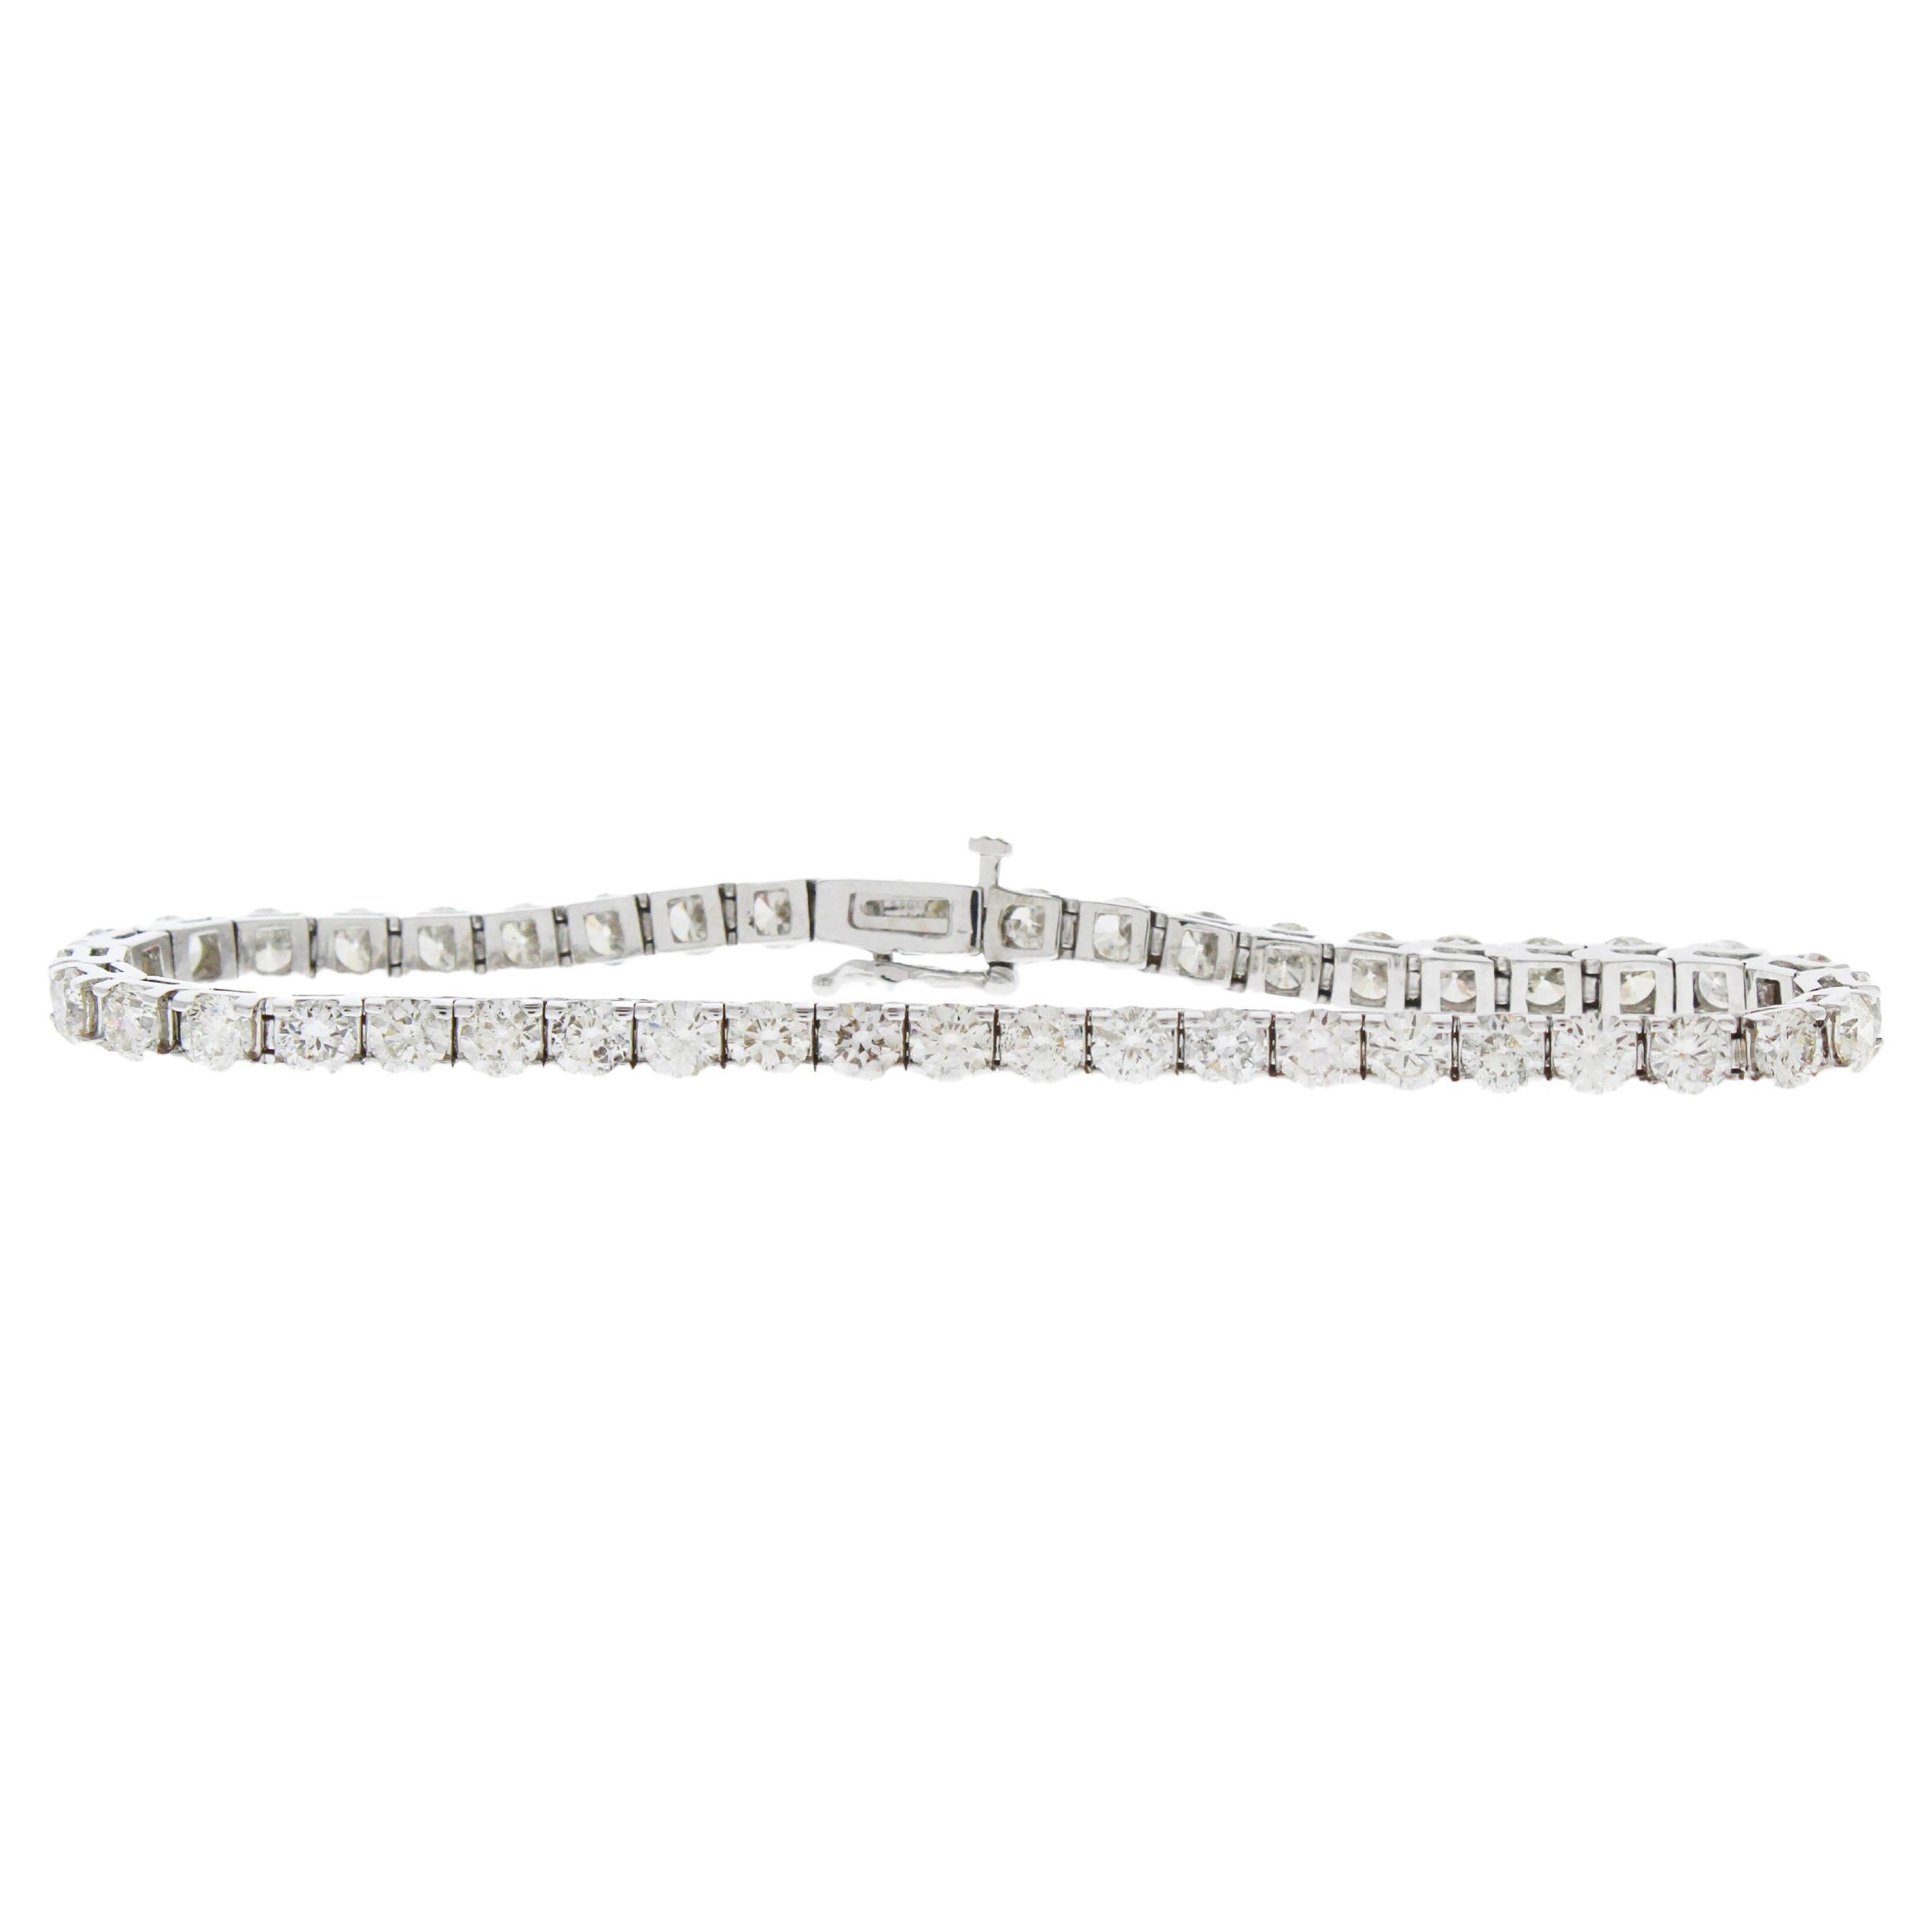 10 Carat Natural Round Diamond 4-Prong Tennis Bracelet in 14k White Gold